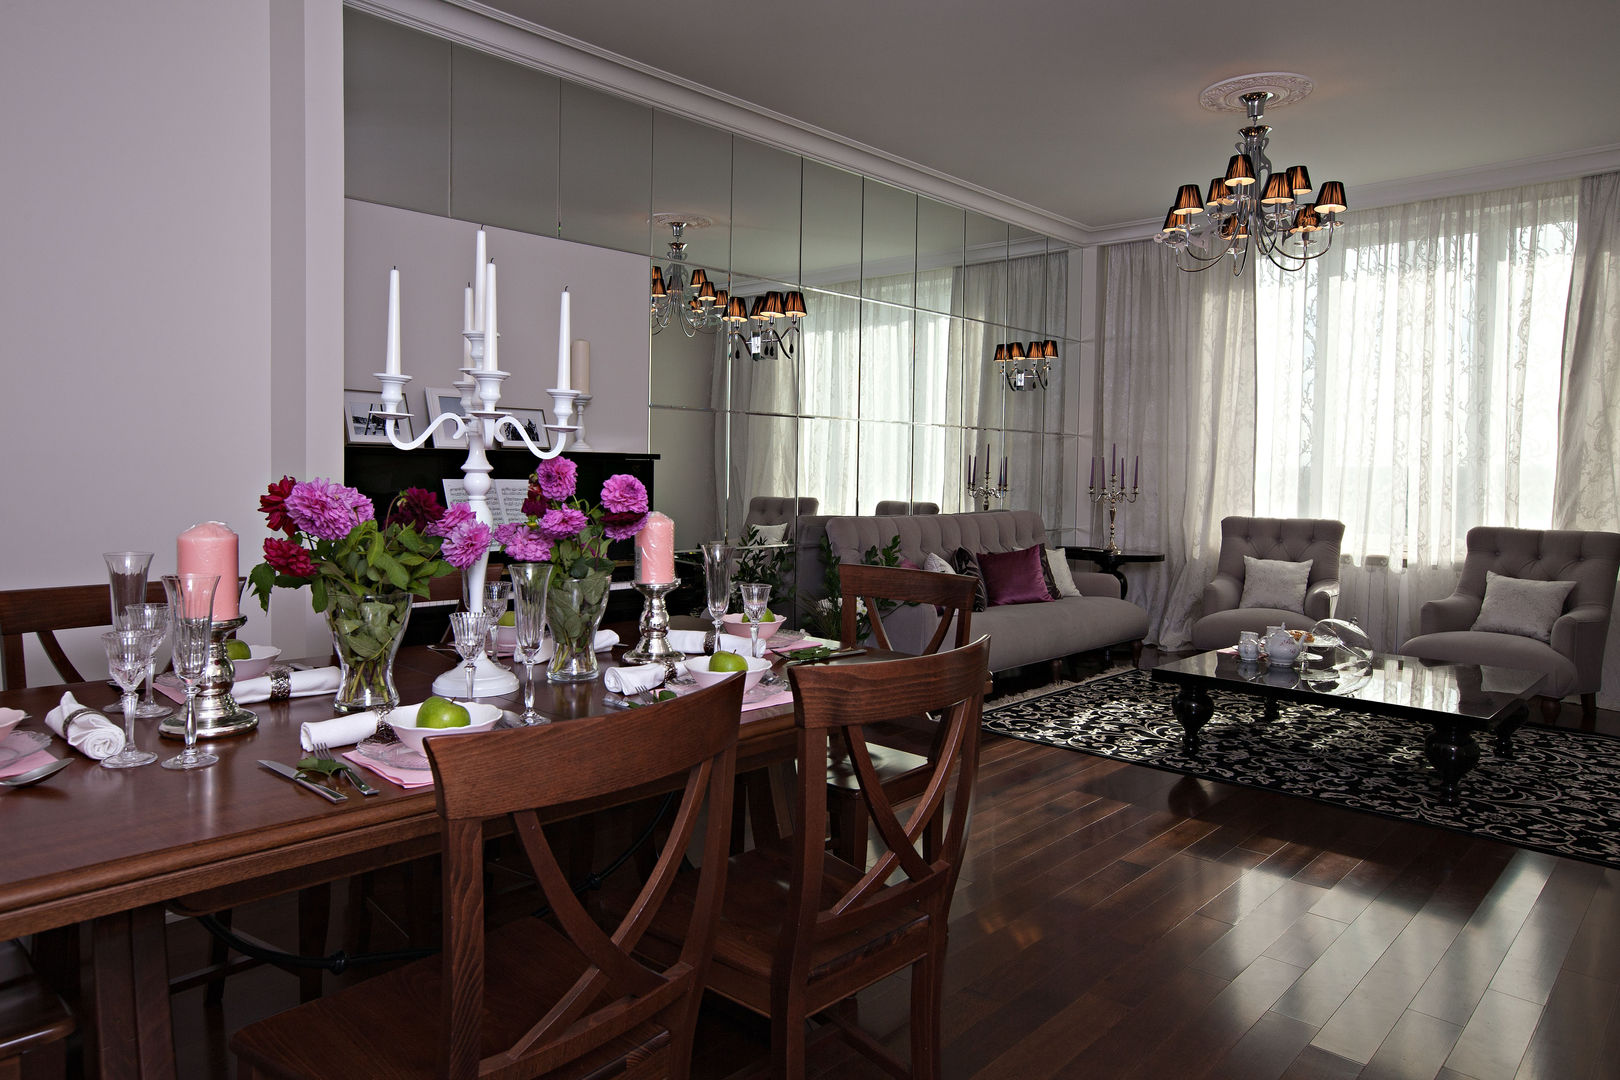 гостиная Инна Азорская Гостиная в классическом стиле стильный интерьер,красивый интерьер,интерьер,дизайнпроект